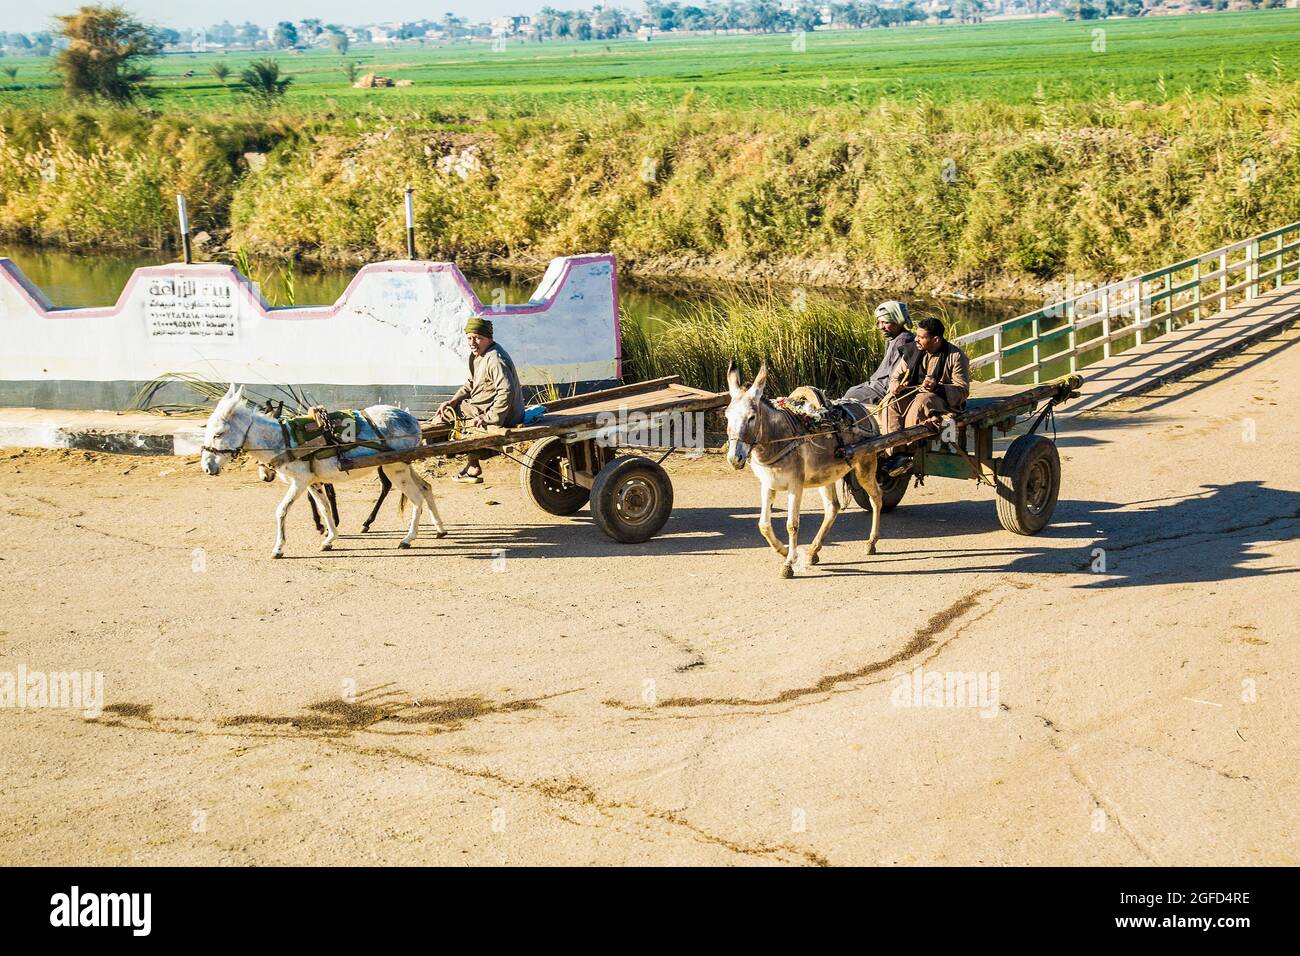 Égypte - 28 janvier 2020 : calèches égyptiennes traditionnelles avec ânes près du canal d'irrigation dans la vallée du Nil. Égypte. Banque D'Images